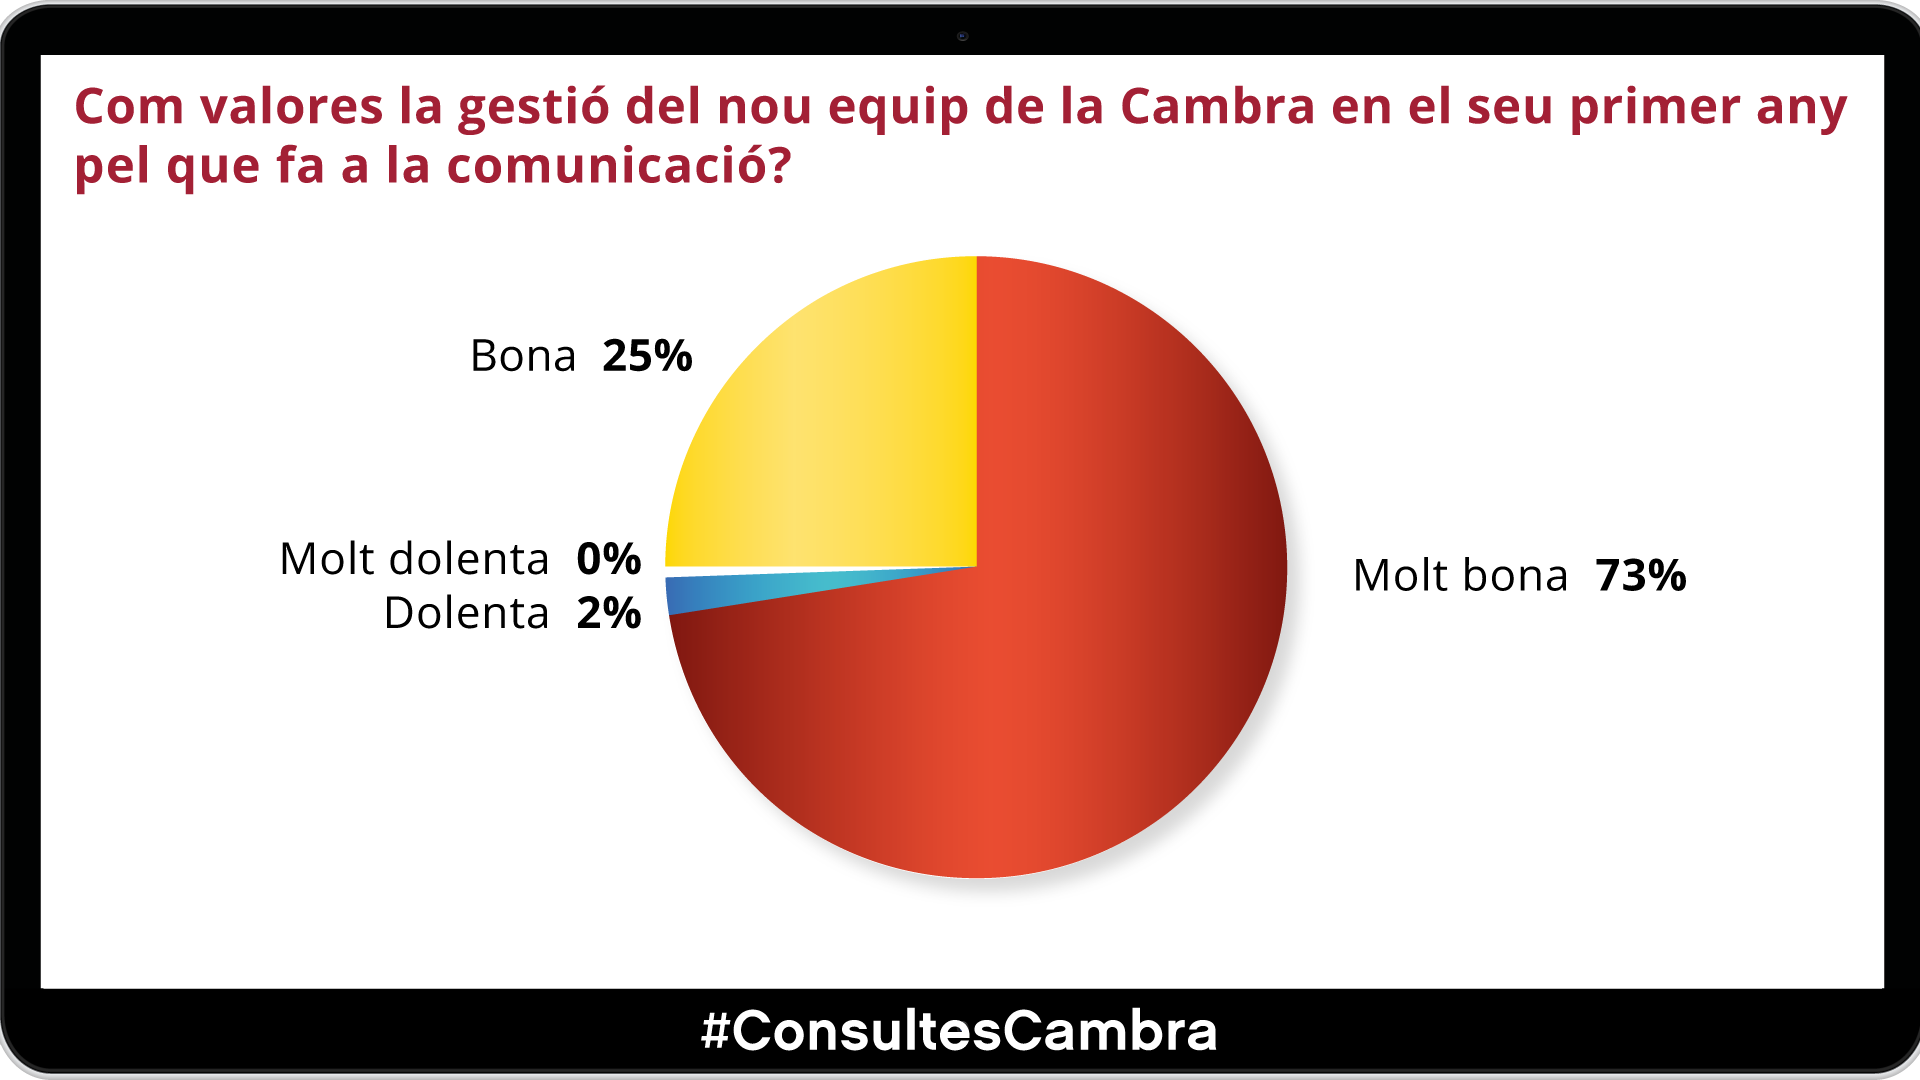 El 97% de l’empresariat aprova la gestió del nou equip de la Cambra de Barcelona en el seu primer any